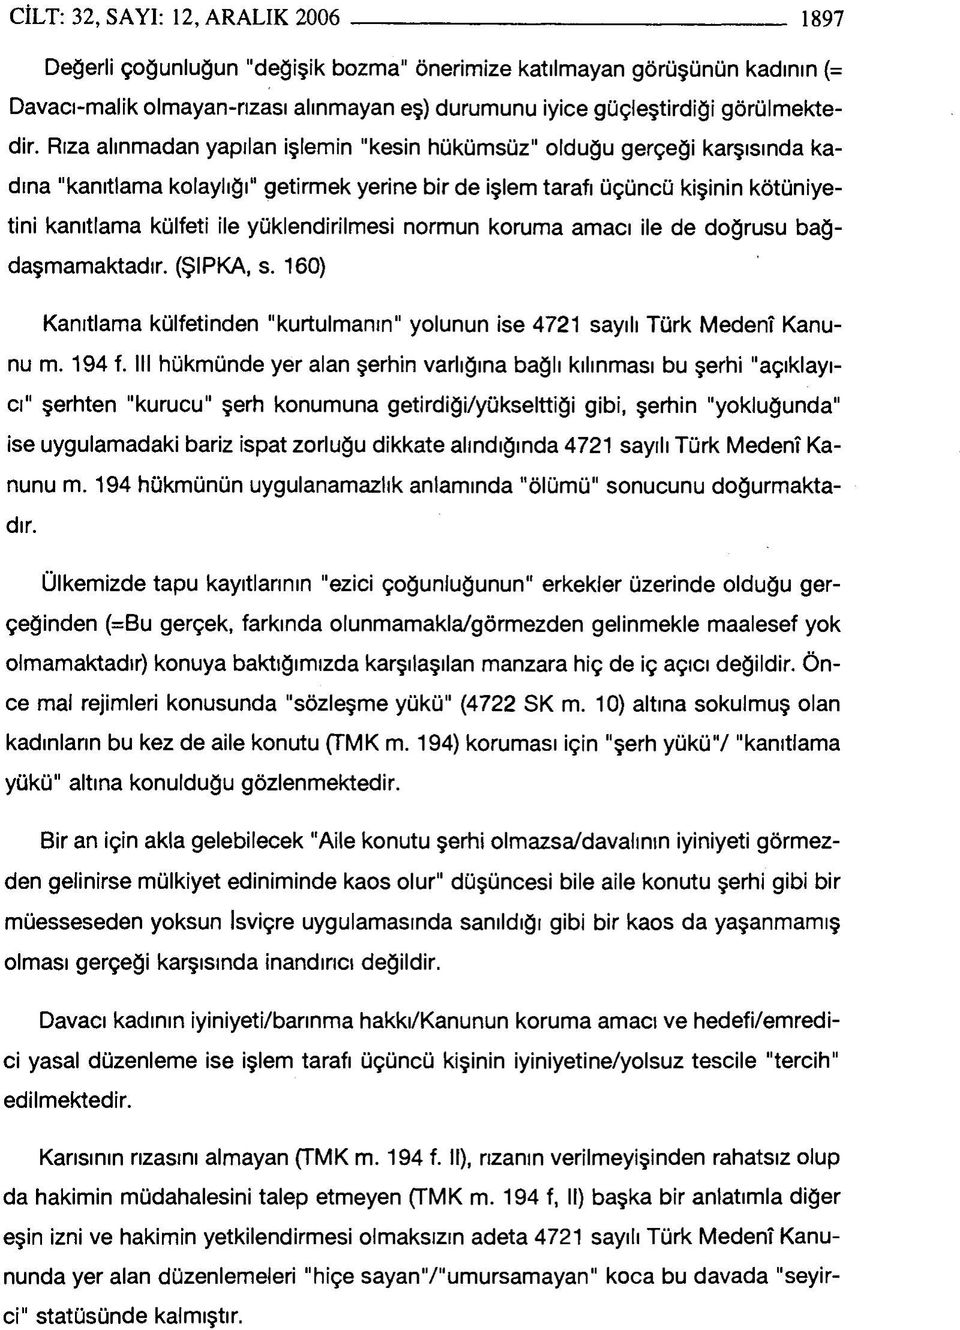 yüklendirilmesi normun koruma amacı ile de doğrusu bağdaşmamaktadır. (ŞIPKA, s. 160) Kanıtlama külfetinden "kurtulmanın" yolunun ise 4721 sayılı Türk Medenî Kanunu m. 194 f.